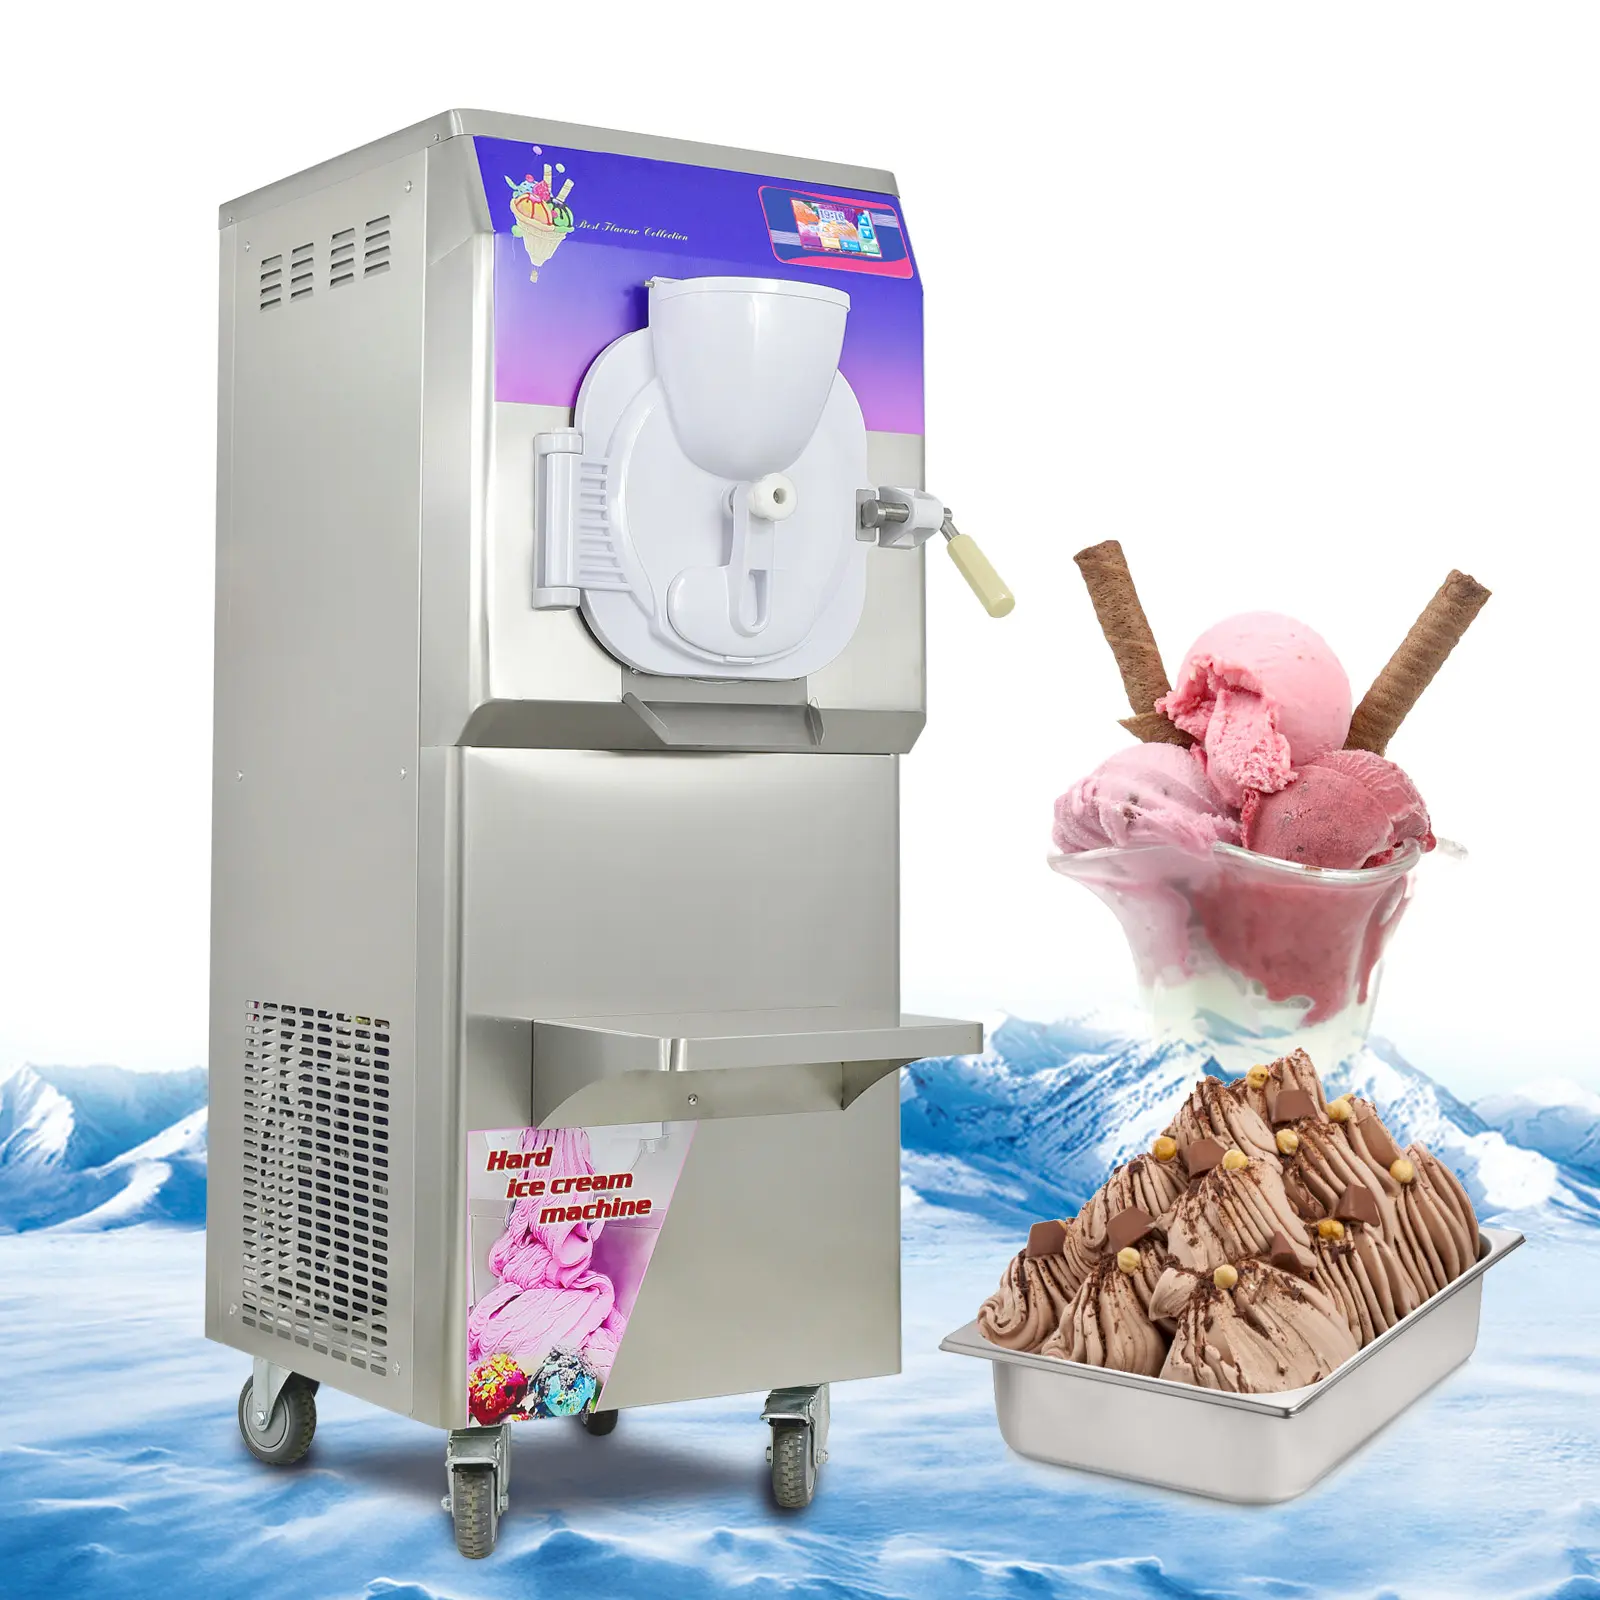 Carpigiani Taylor-freezer italiano de puerta a puerta, lote de helados, hielo italiano, CE, ETL, envío gratis desde el almacén